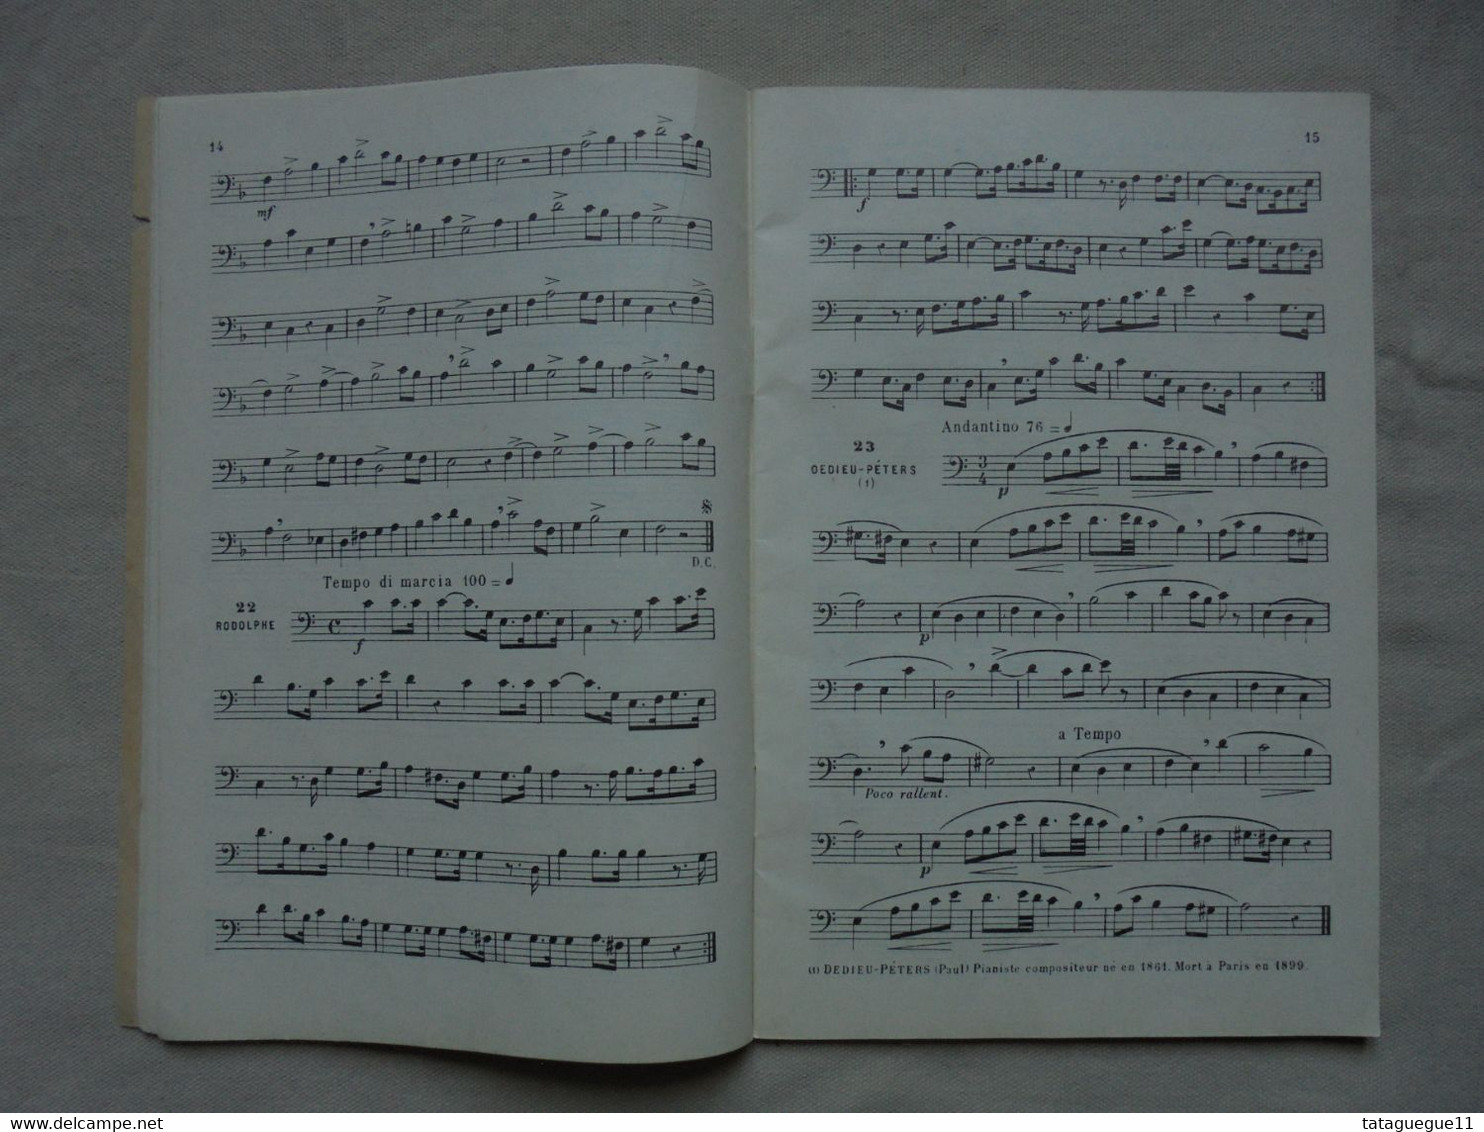 Ancien - Livret Solfège Des Solfèges Pour Voix De Soprano Années 10 - Unterrichtswerke